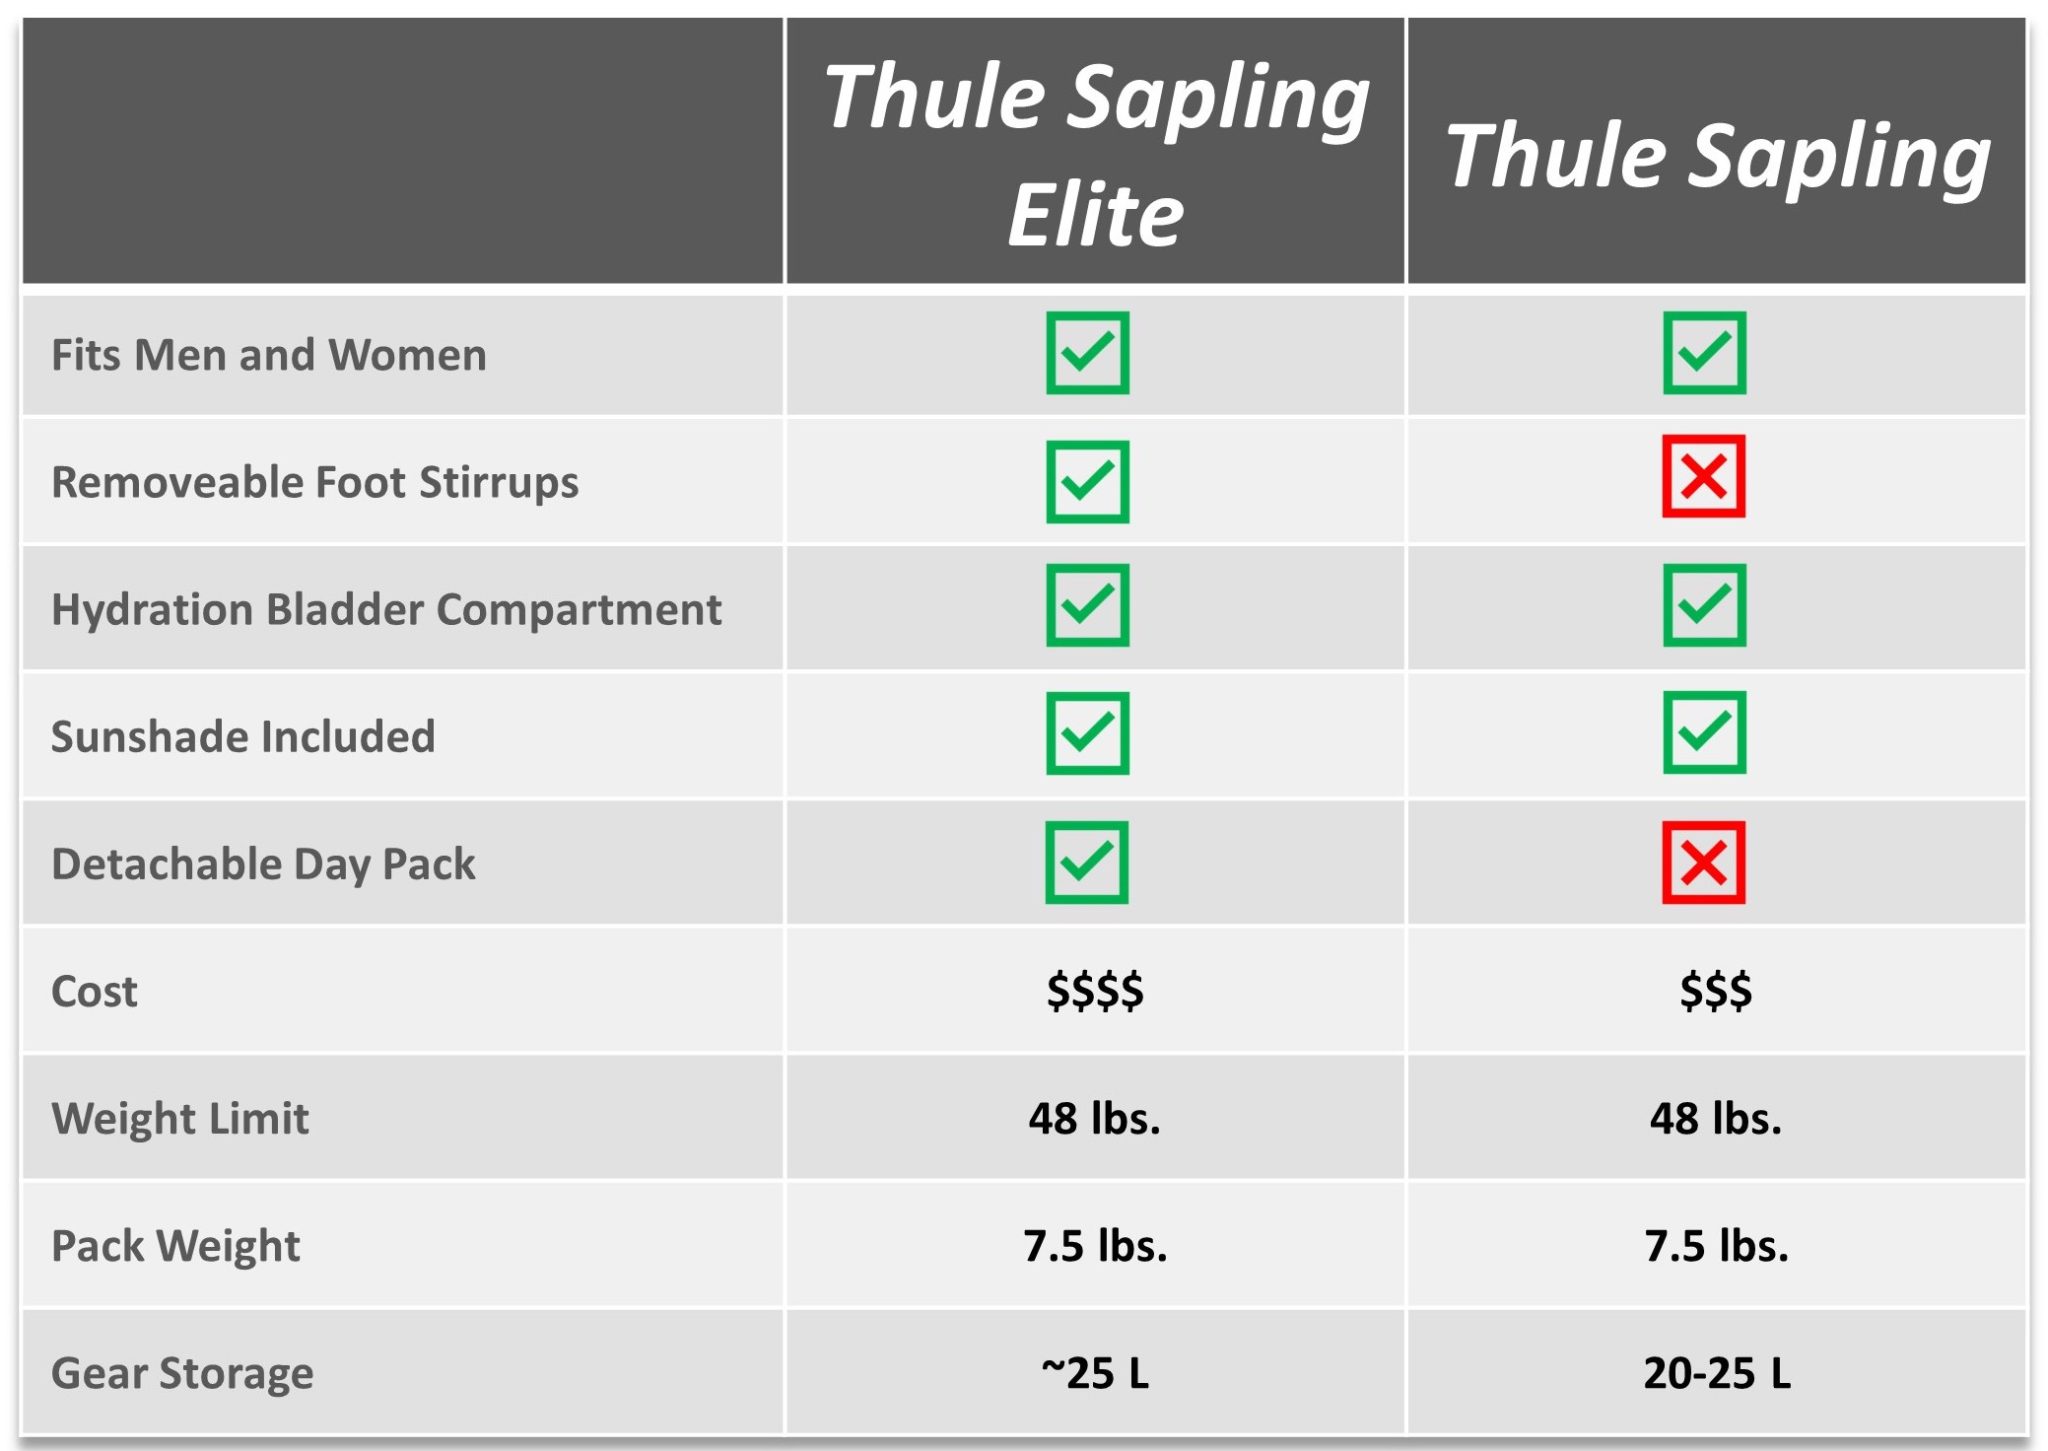 Feature comparison chart for Thule Sapling Elite vs Thule Sapling